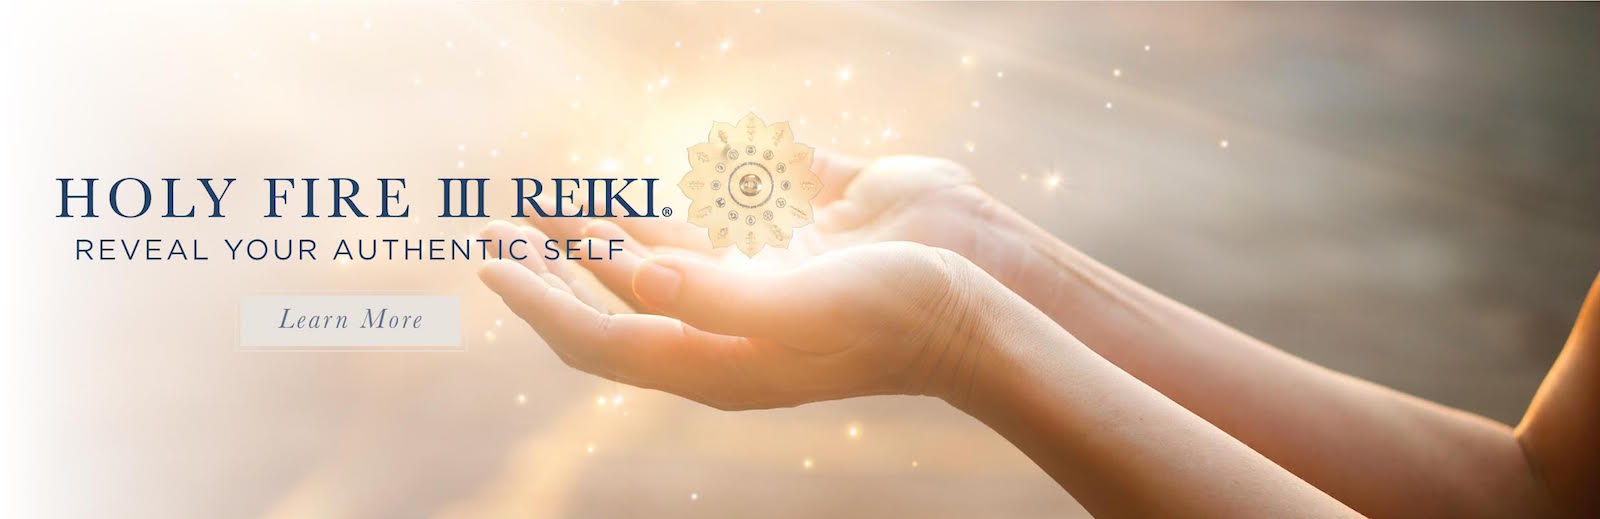 Reiki Lifestyle Reiki Lifestyle Reiki Healing Therapy And Attunements 